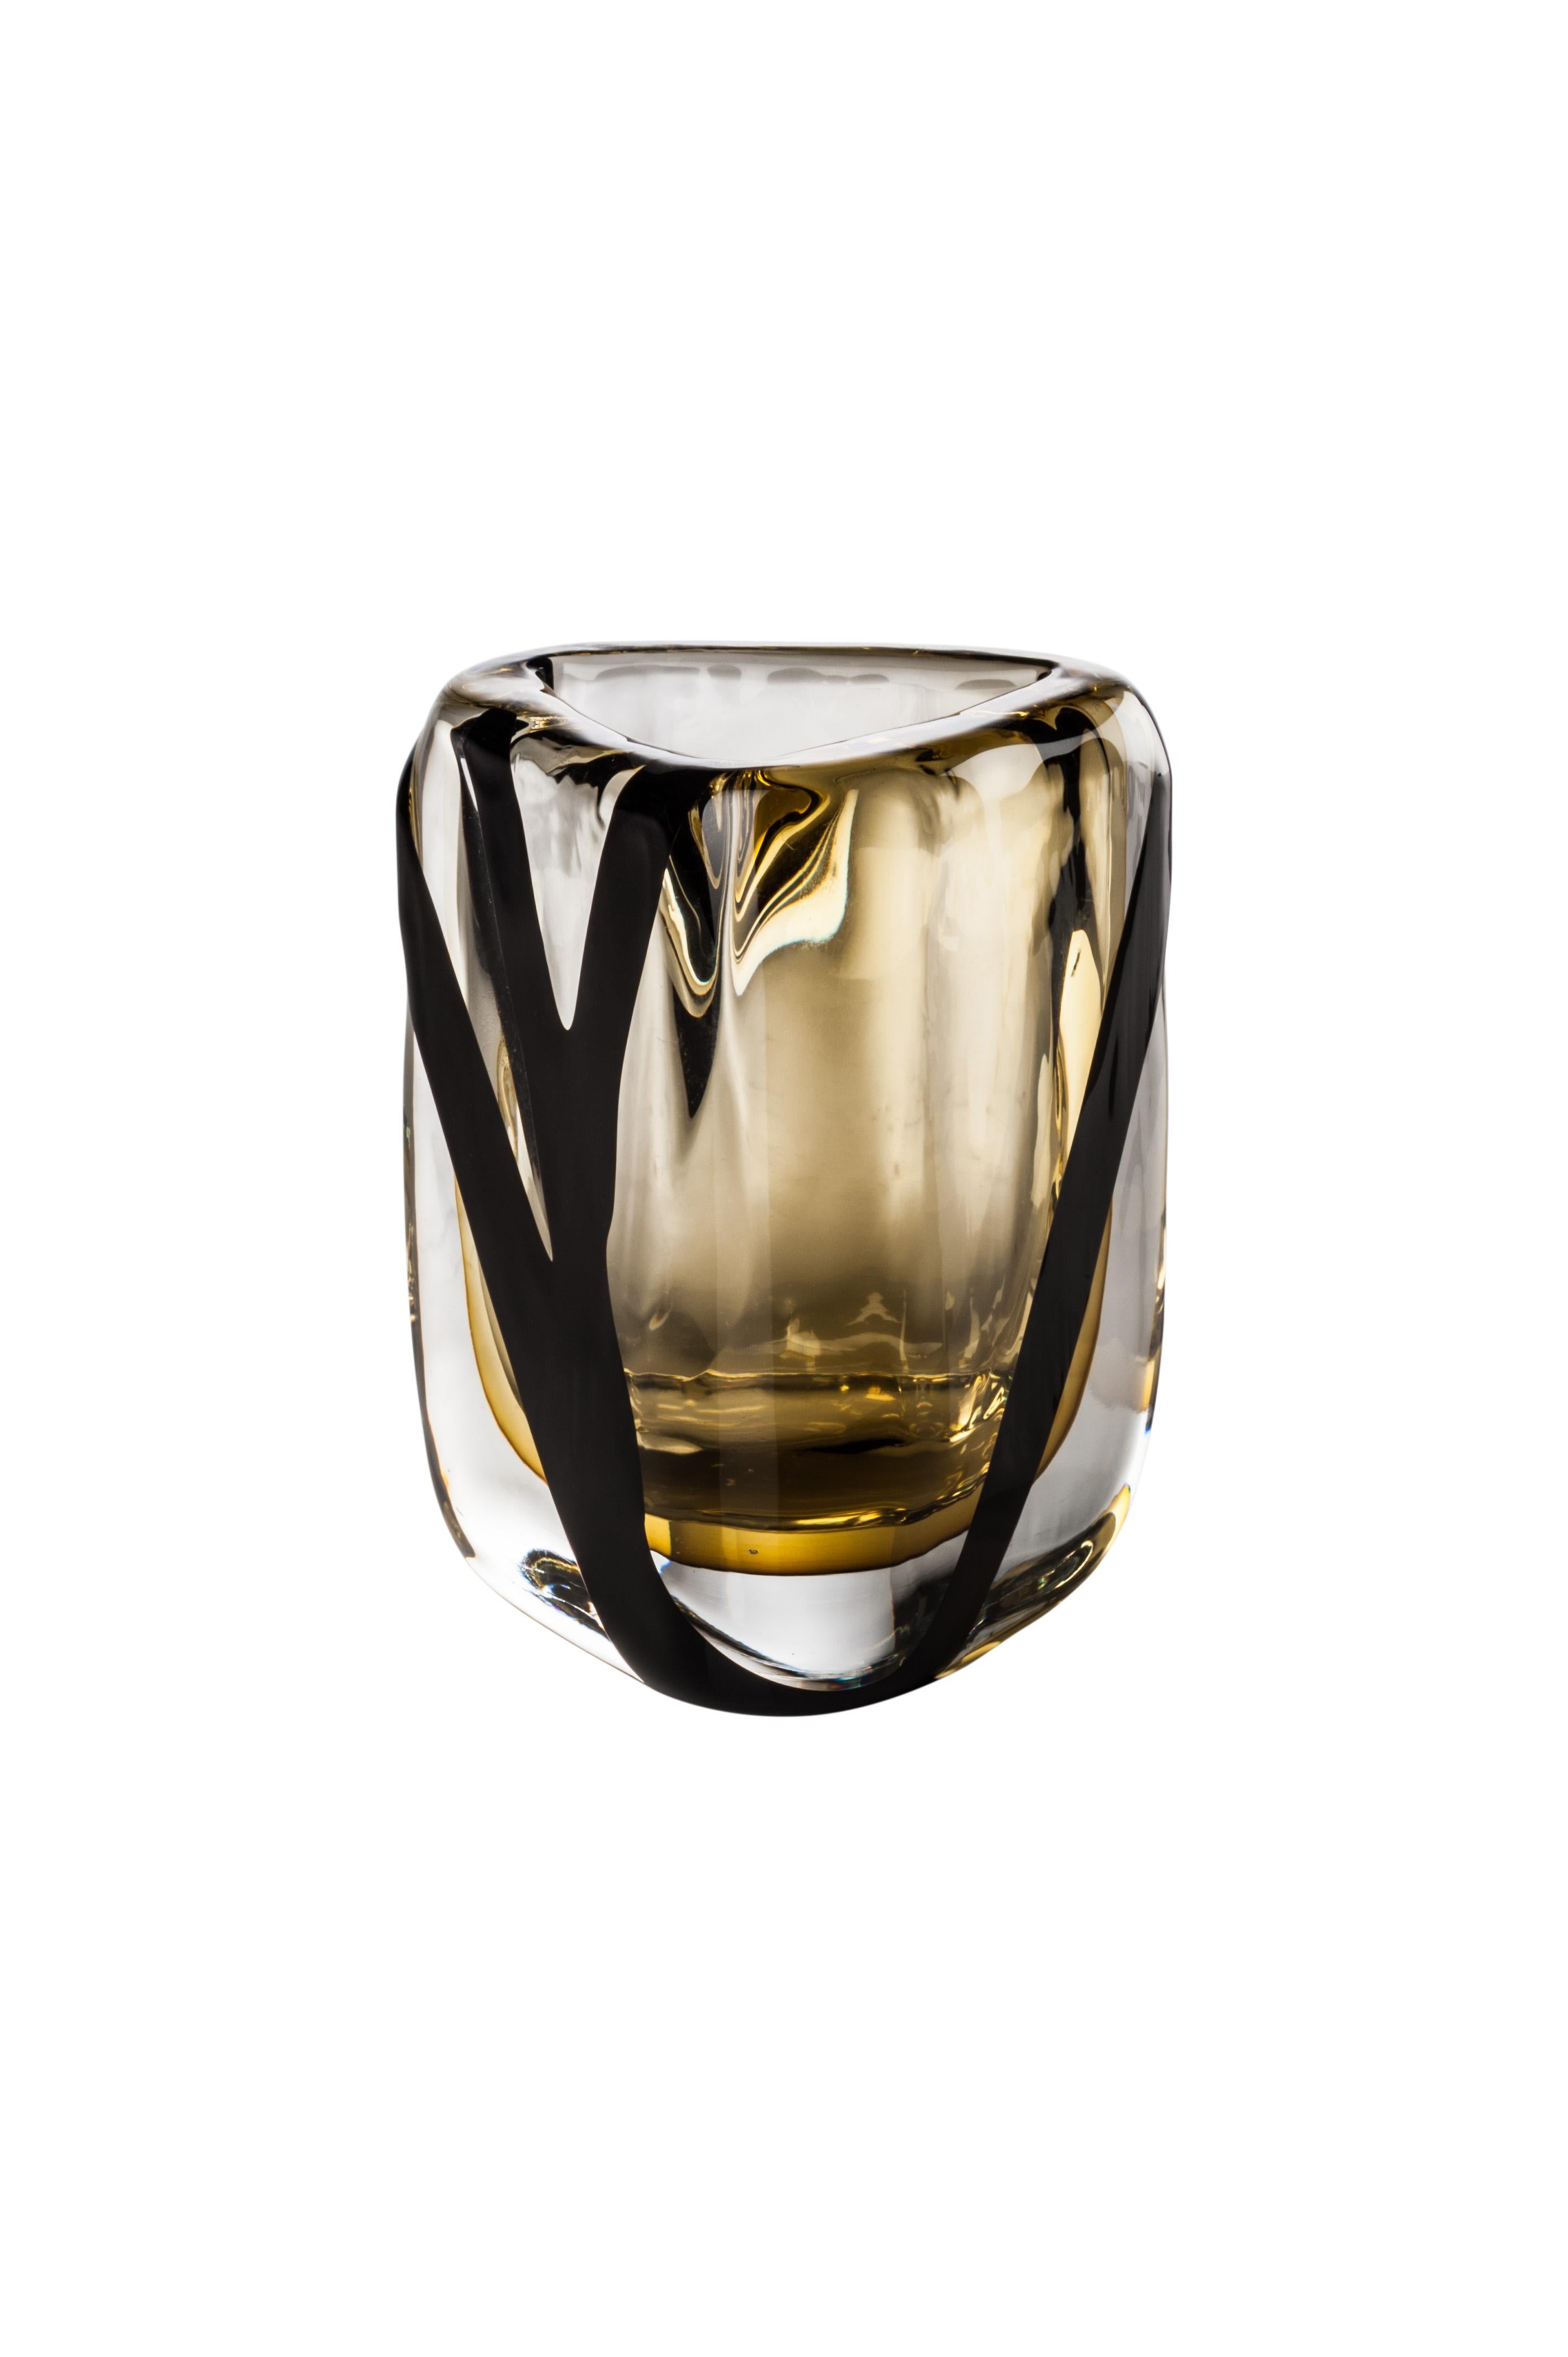 Venini Glasvase aus transparentem Kristall und Tee mit schwarzem Dekor, entworfen von Peter Marino im Jahr 2017. Perfekt für die Innendekoration als Behälter oder Schmuckstück für jeden Raum. Auch in anderen Farben auf 1stdibs erhältlich. Limitierte